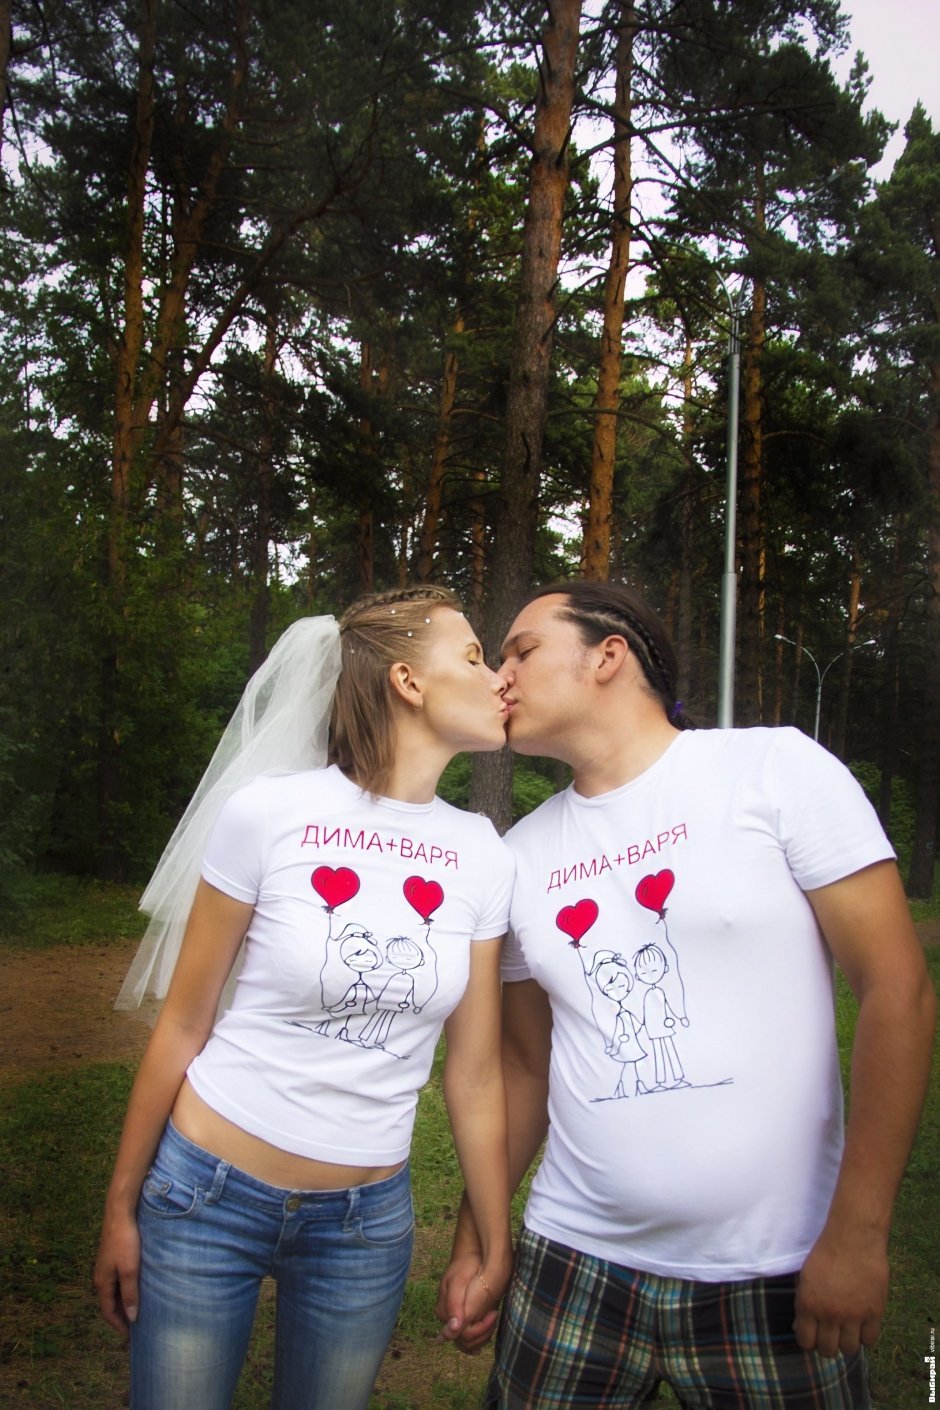 Дмитрий и Варвара Шарифулины. Любовь - это то, что делает из двух разных людей одно целое, из двух жизней - одну и счастливую.